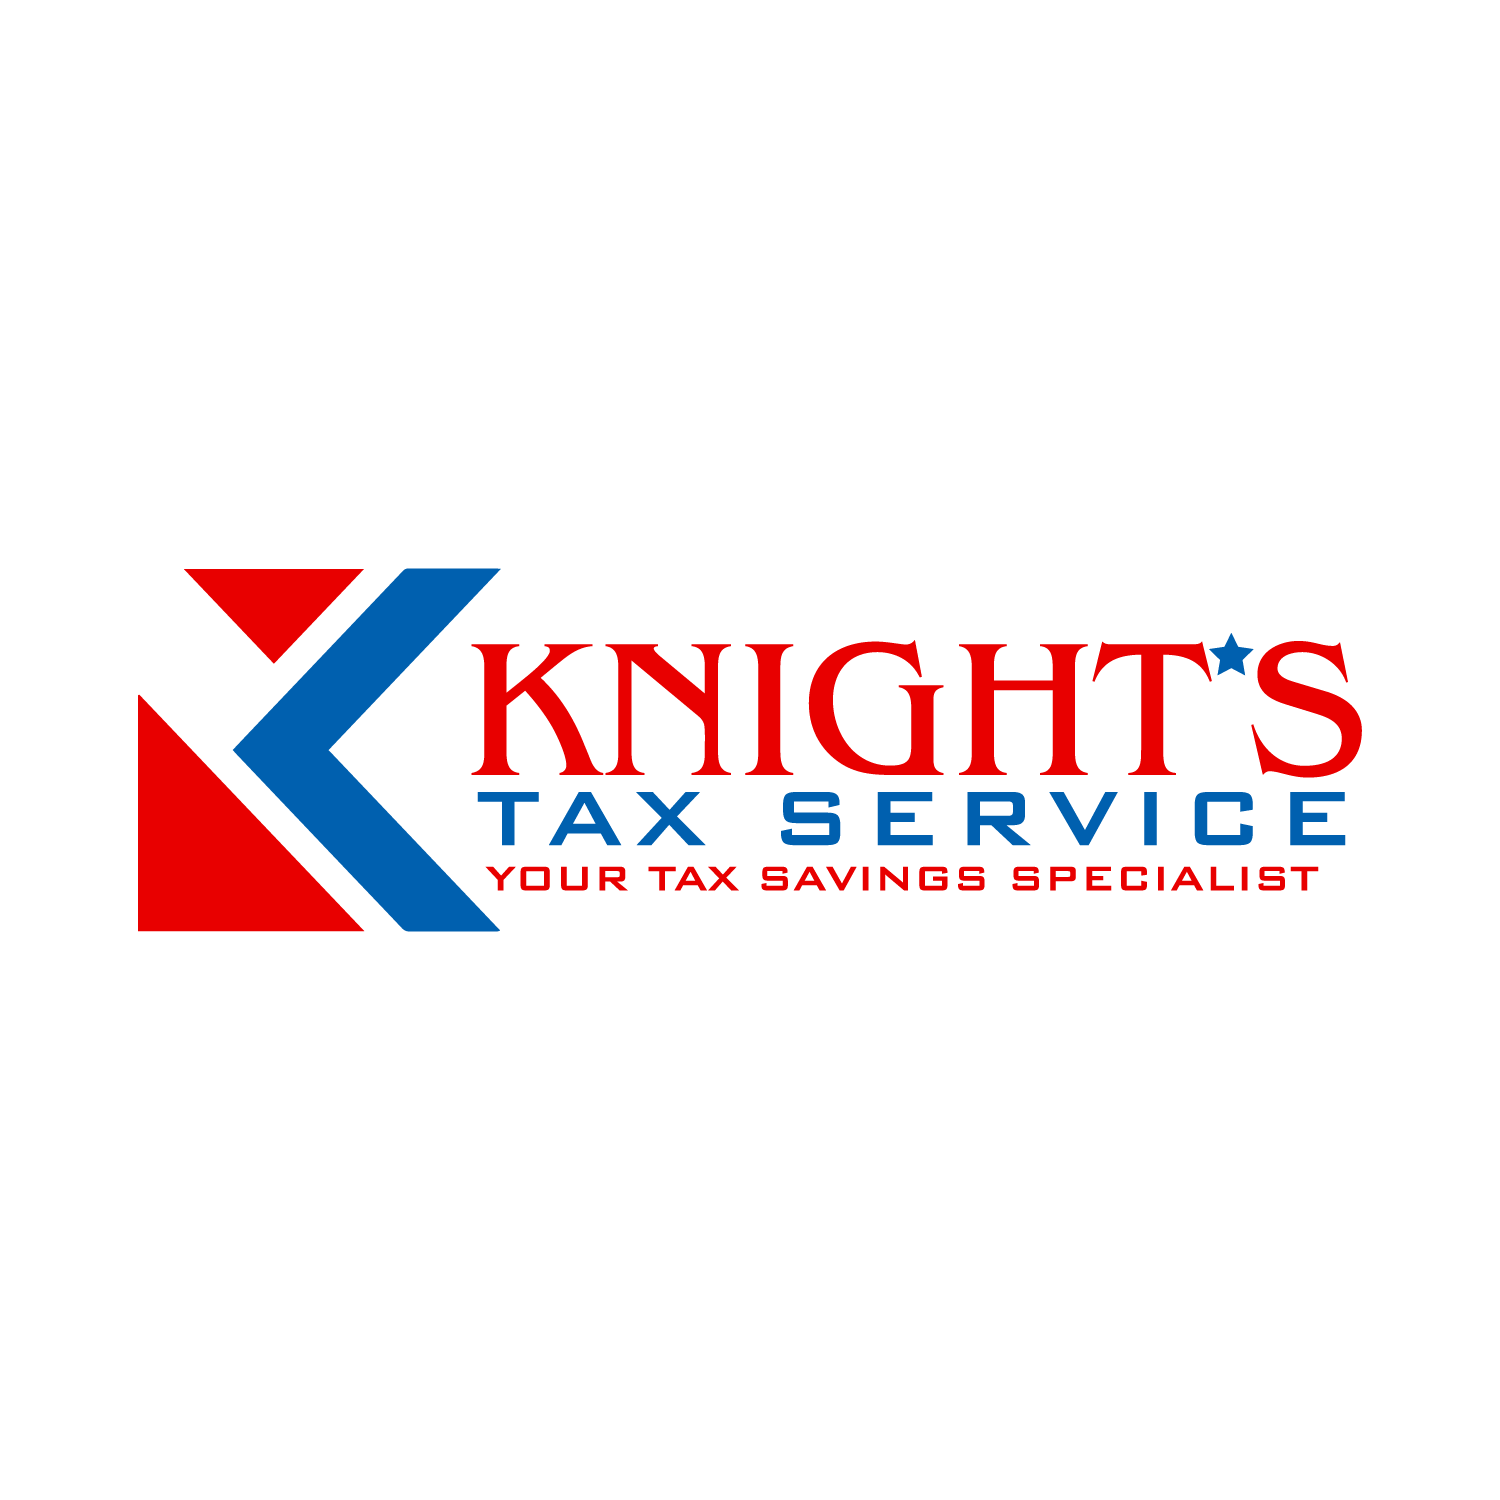 Knight's Tax Service